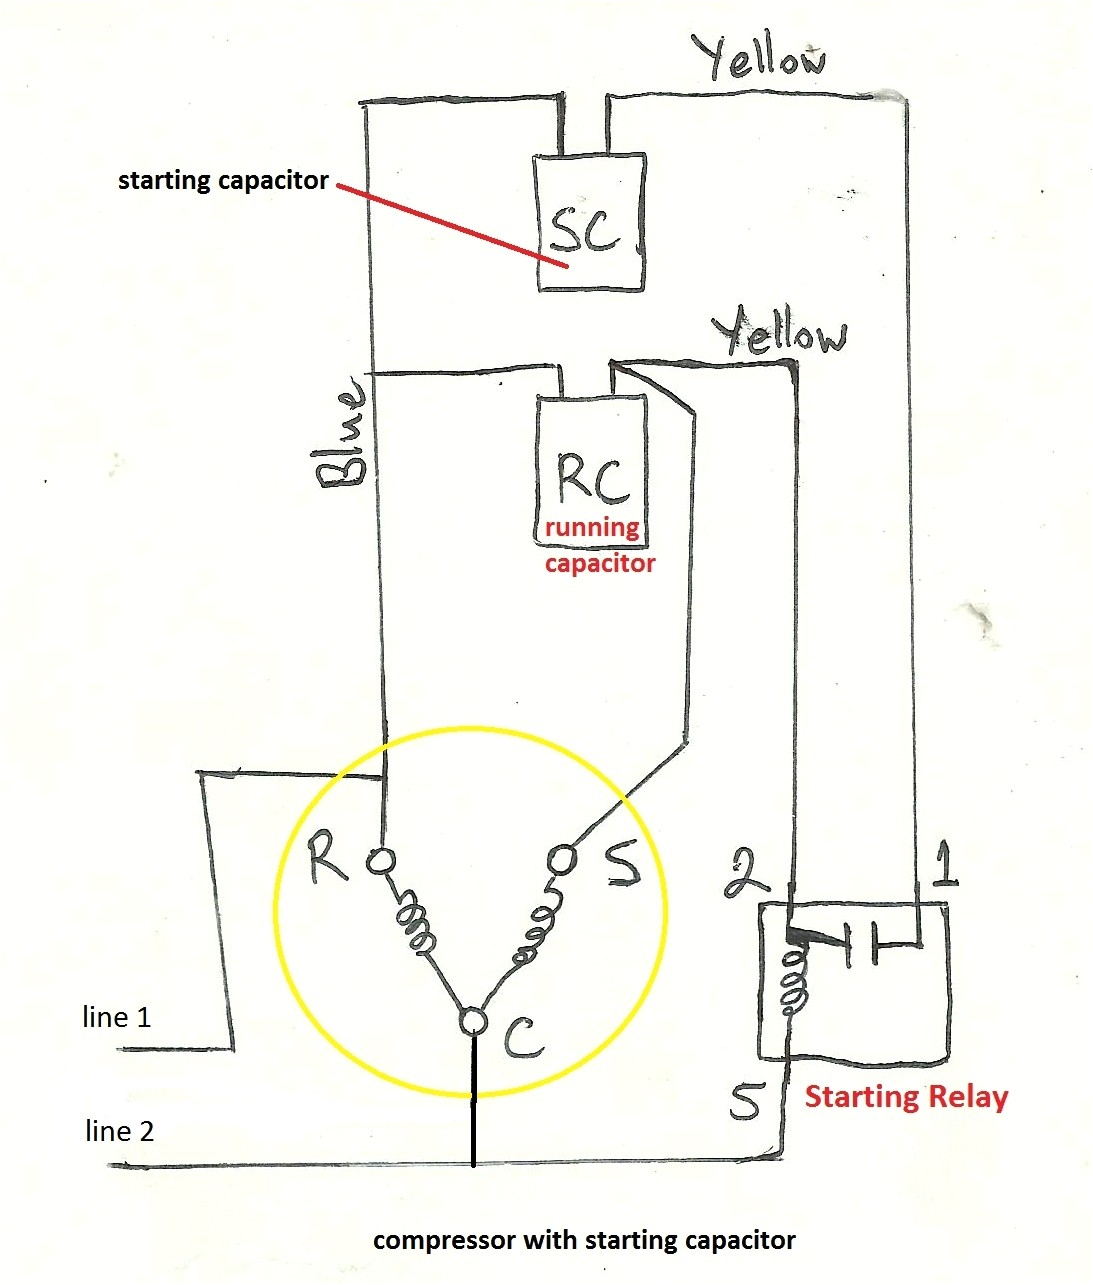 teseh wiring diagram wiring diagram previewteseh wiring diagram 1 wiring diagram source teseh wiring diagram